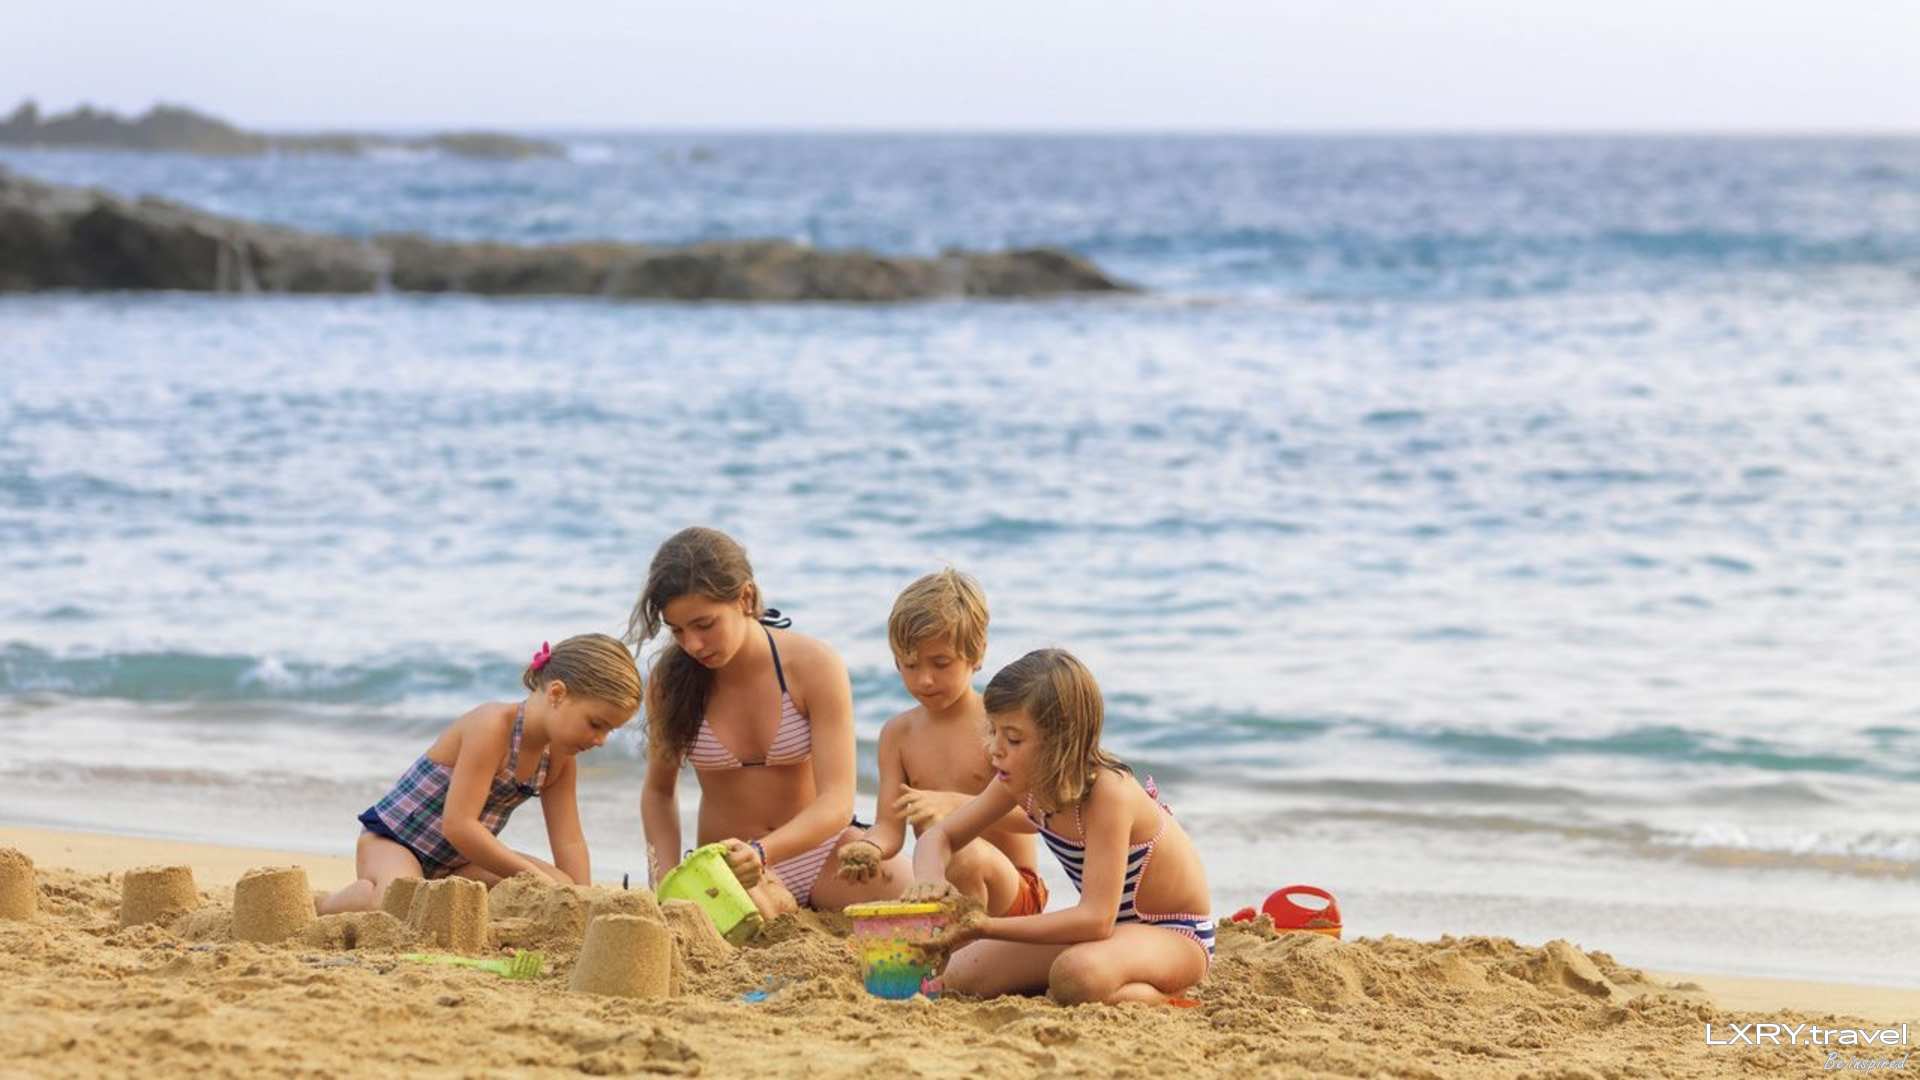 Семьи нудистов праздную. Семья на пляже. Ребятишки на пляже. Детишки на пляже. Детские пляжи.